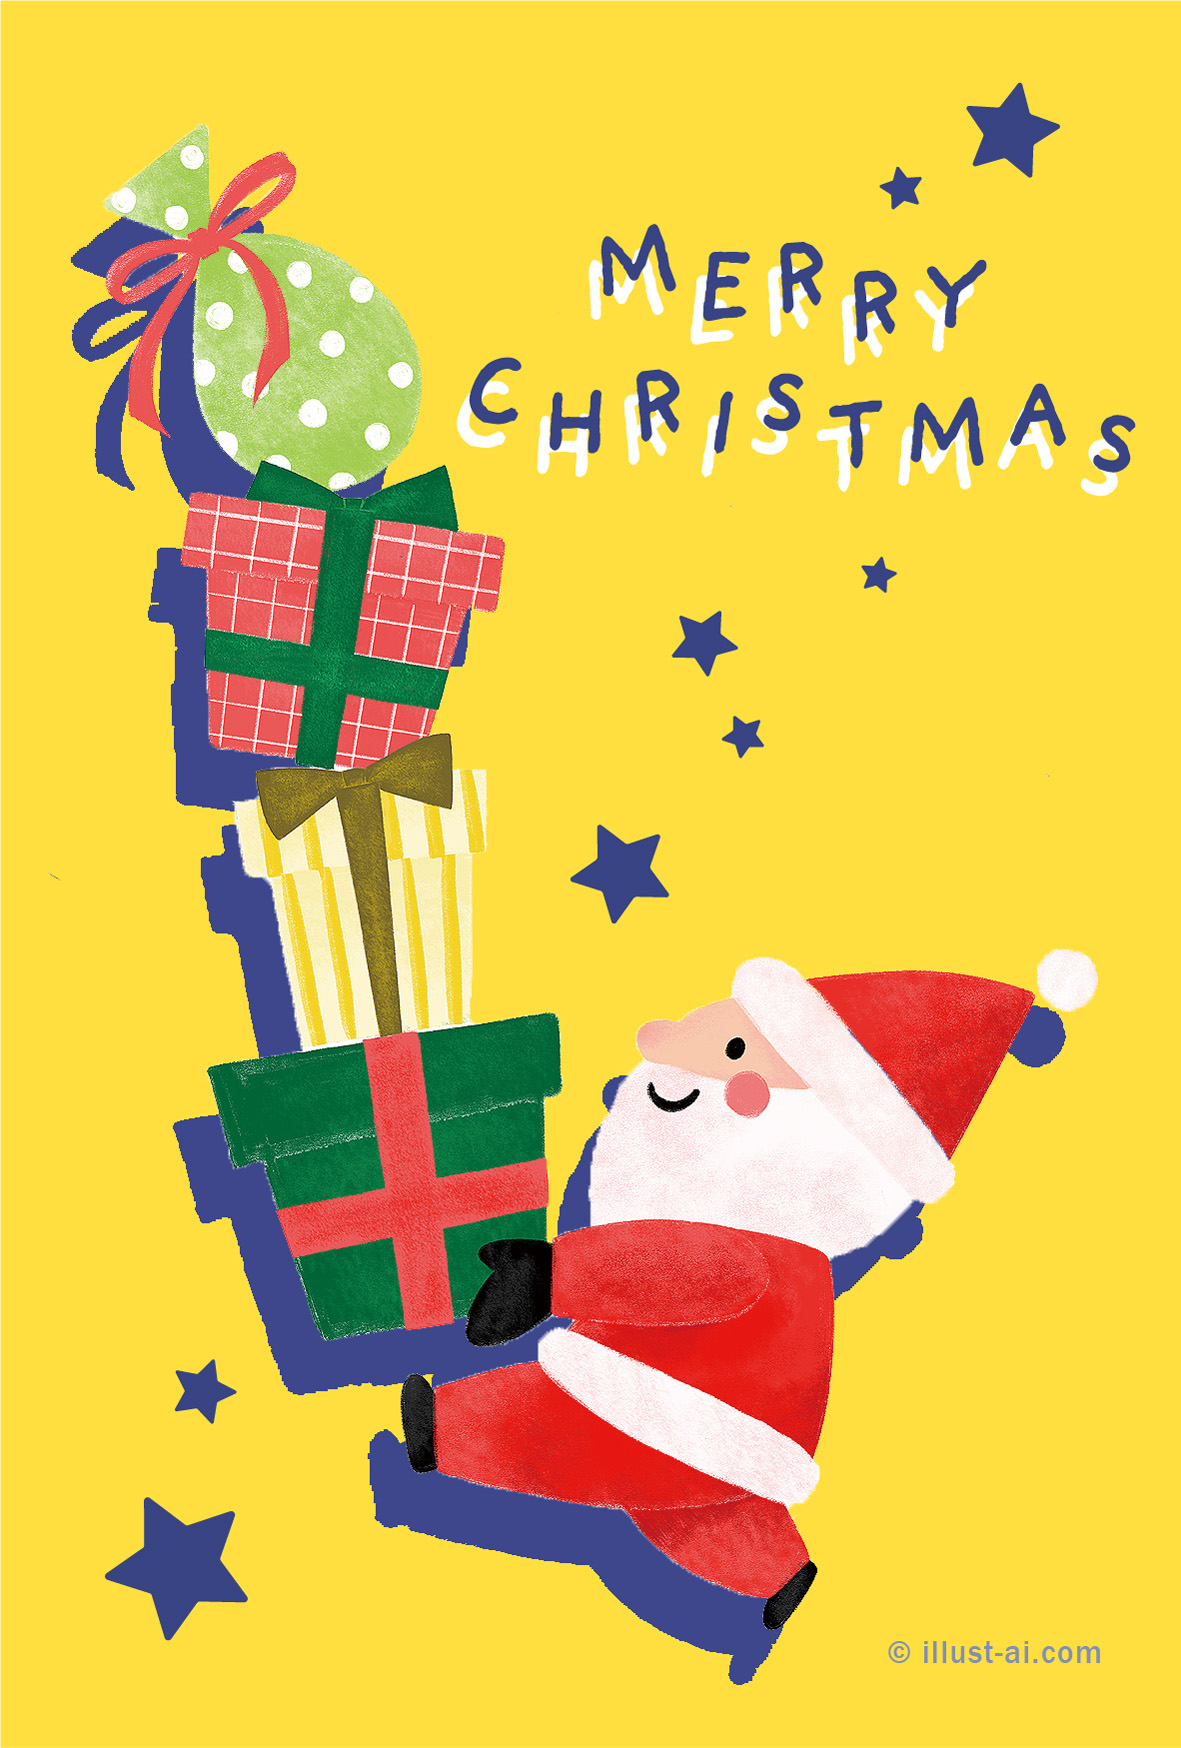 プレゼントを運ぶサンタ クリスマスカードテンプレート ポストカード イラスト素材サイト イラストareira Postcard Template